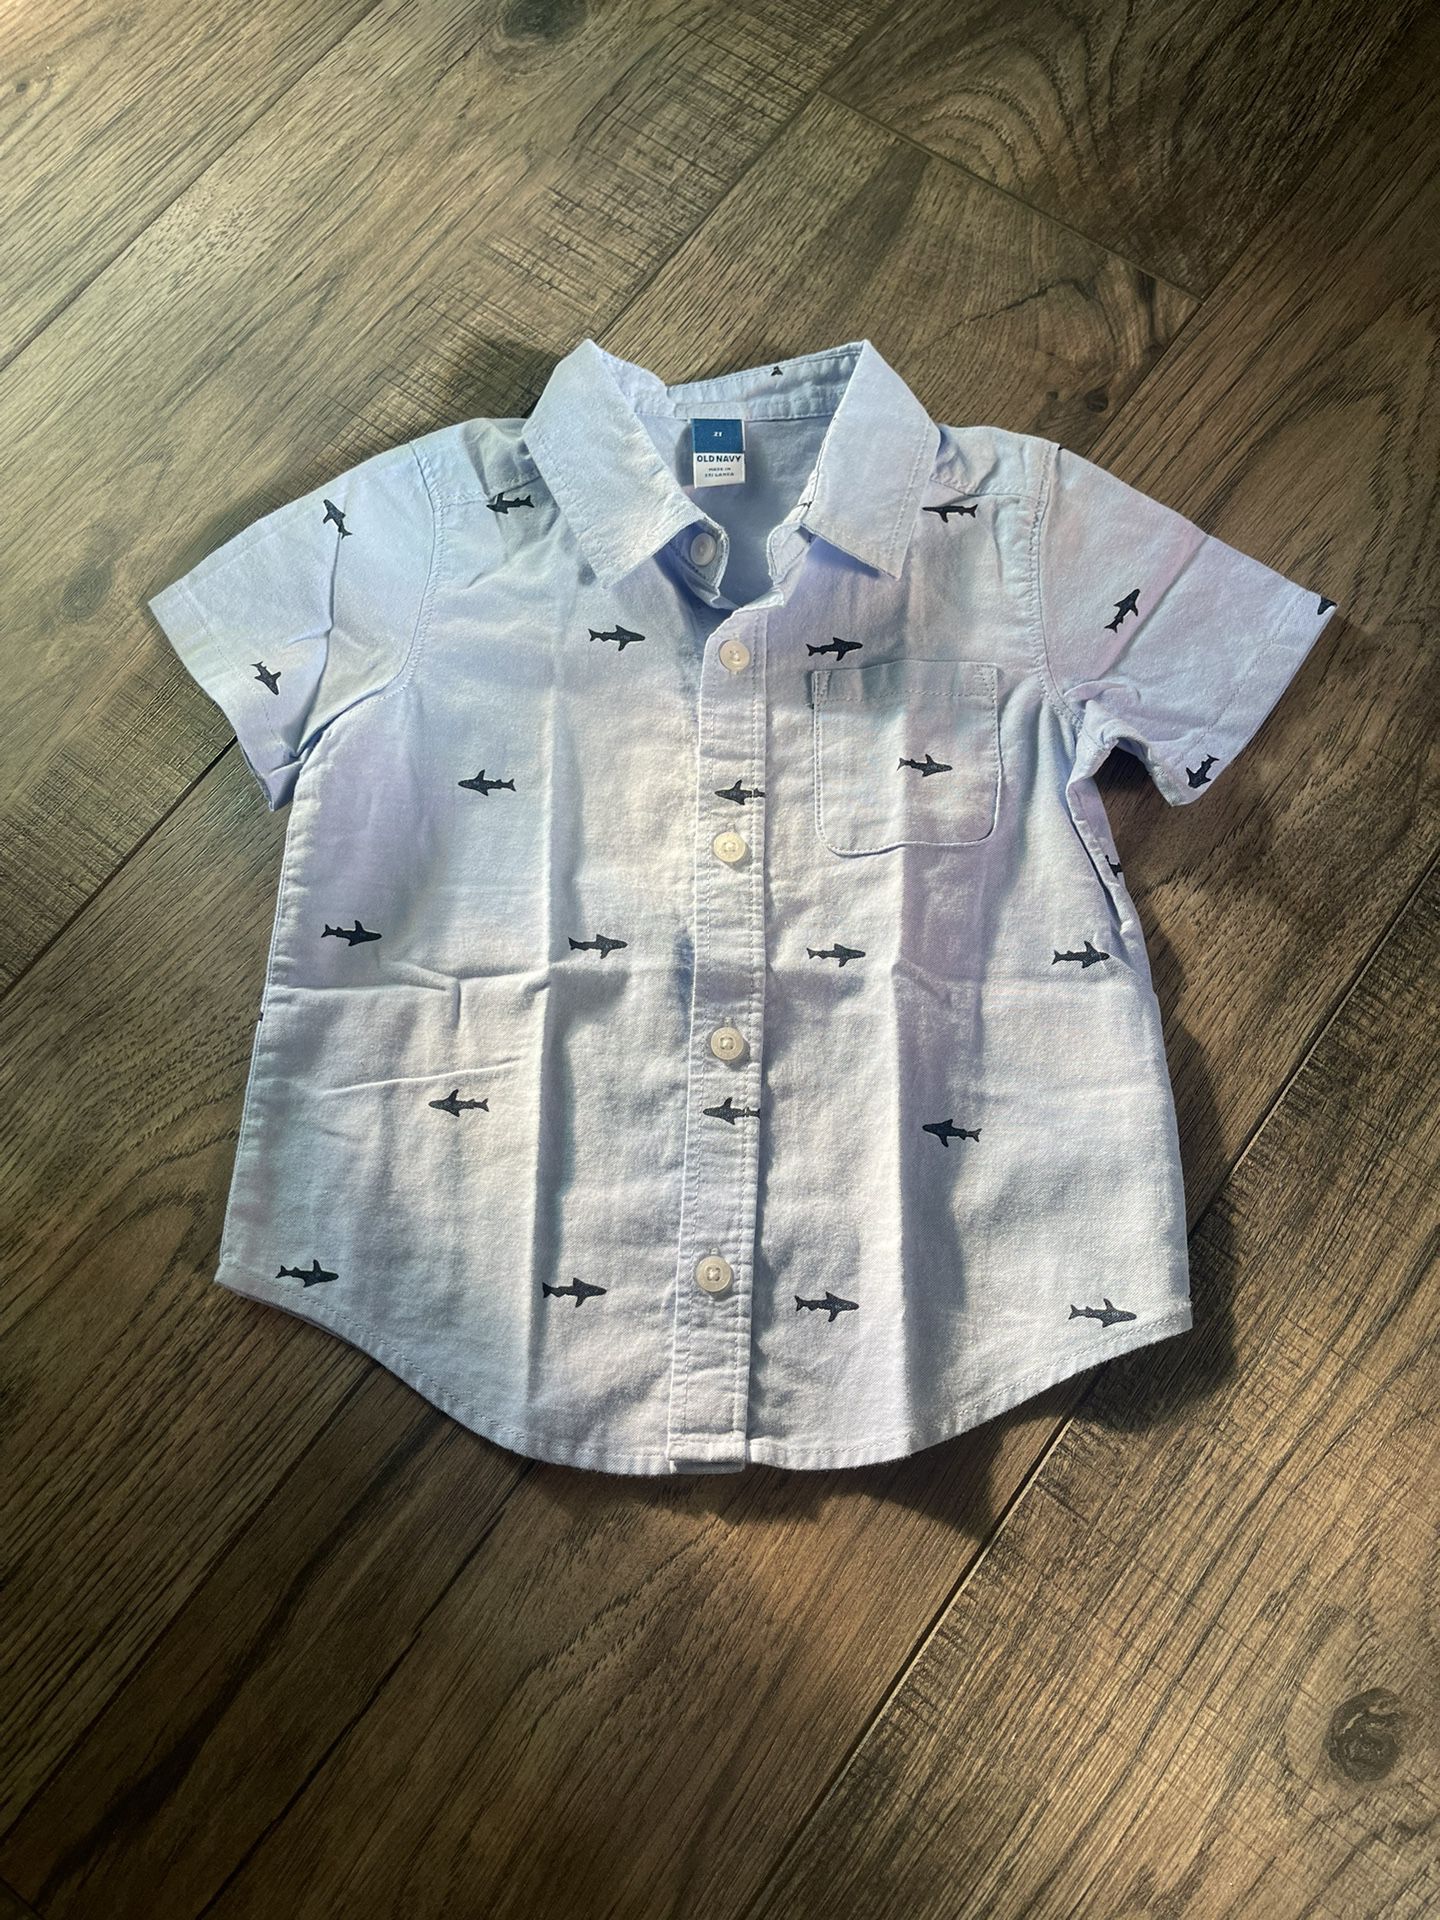 Baby Shark Dress Shirt (Size 2T)